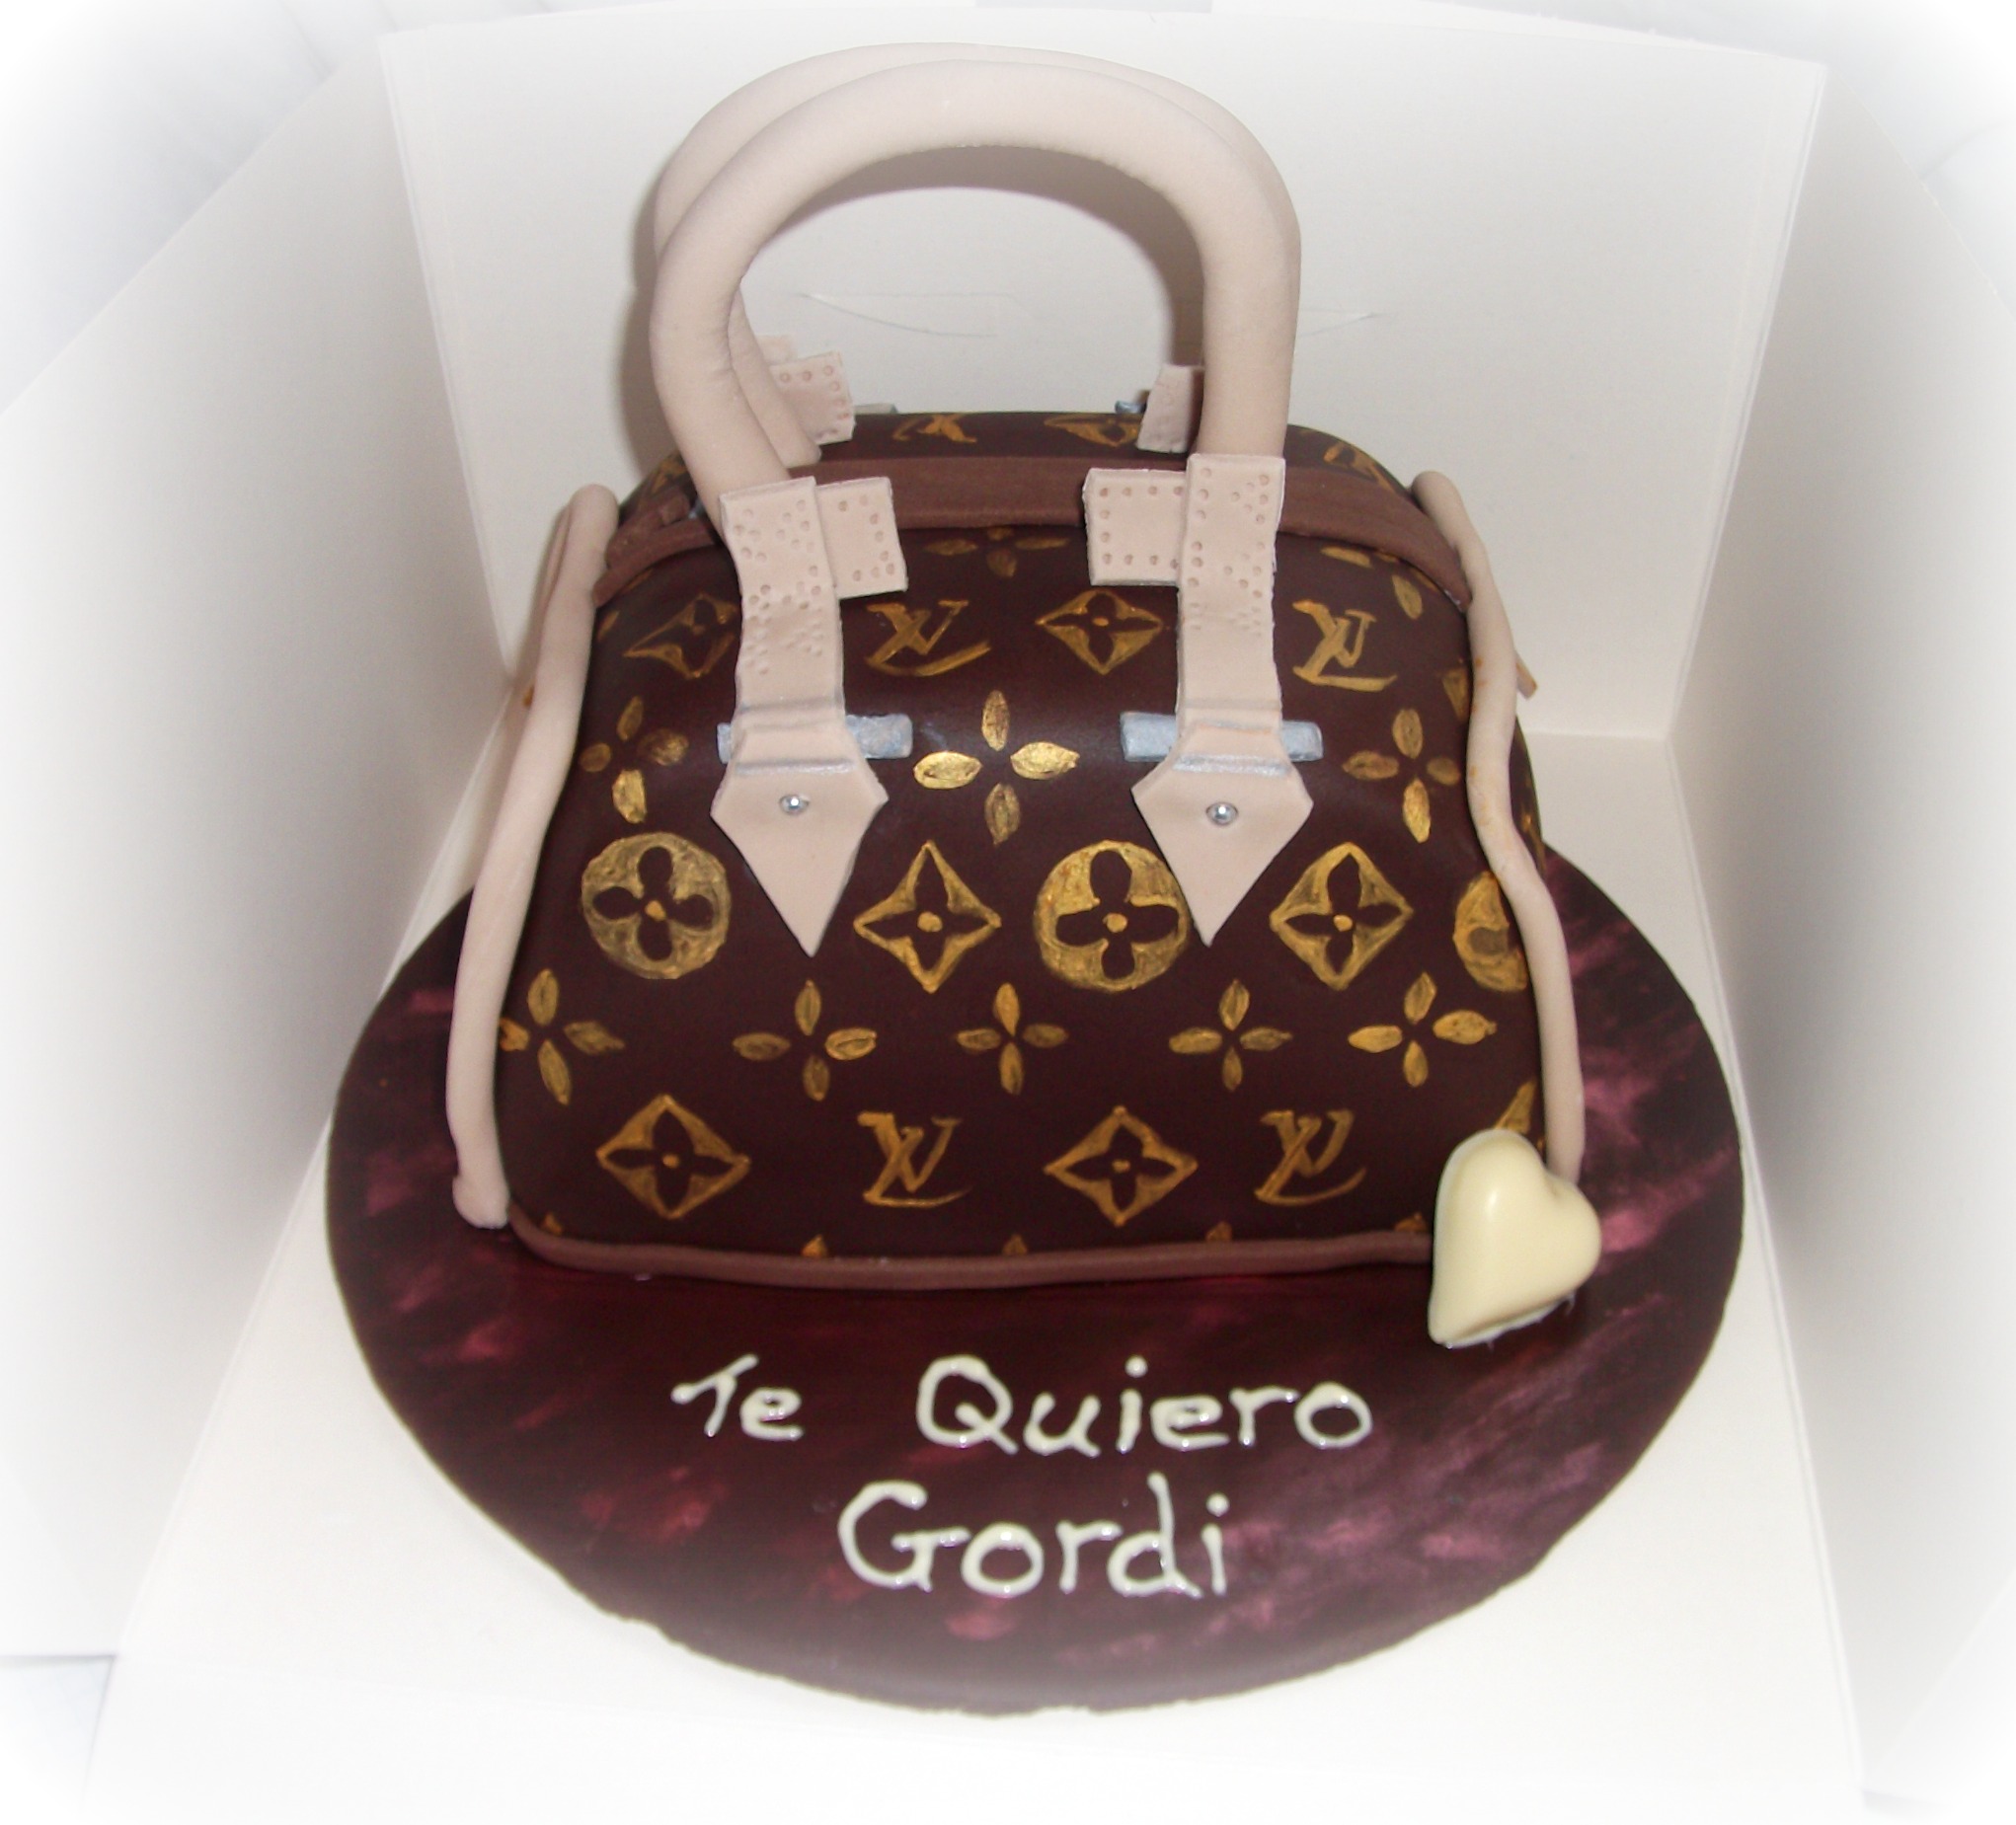 13 Louis Vuitton cake ideas  louis vuitton cake, cake, amazing cakes